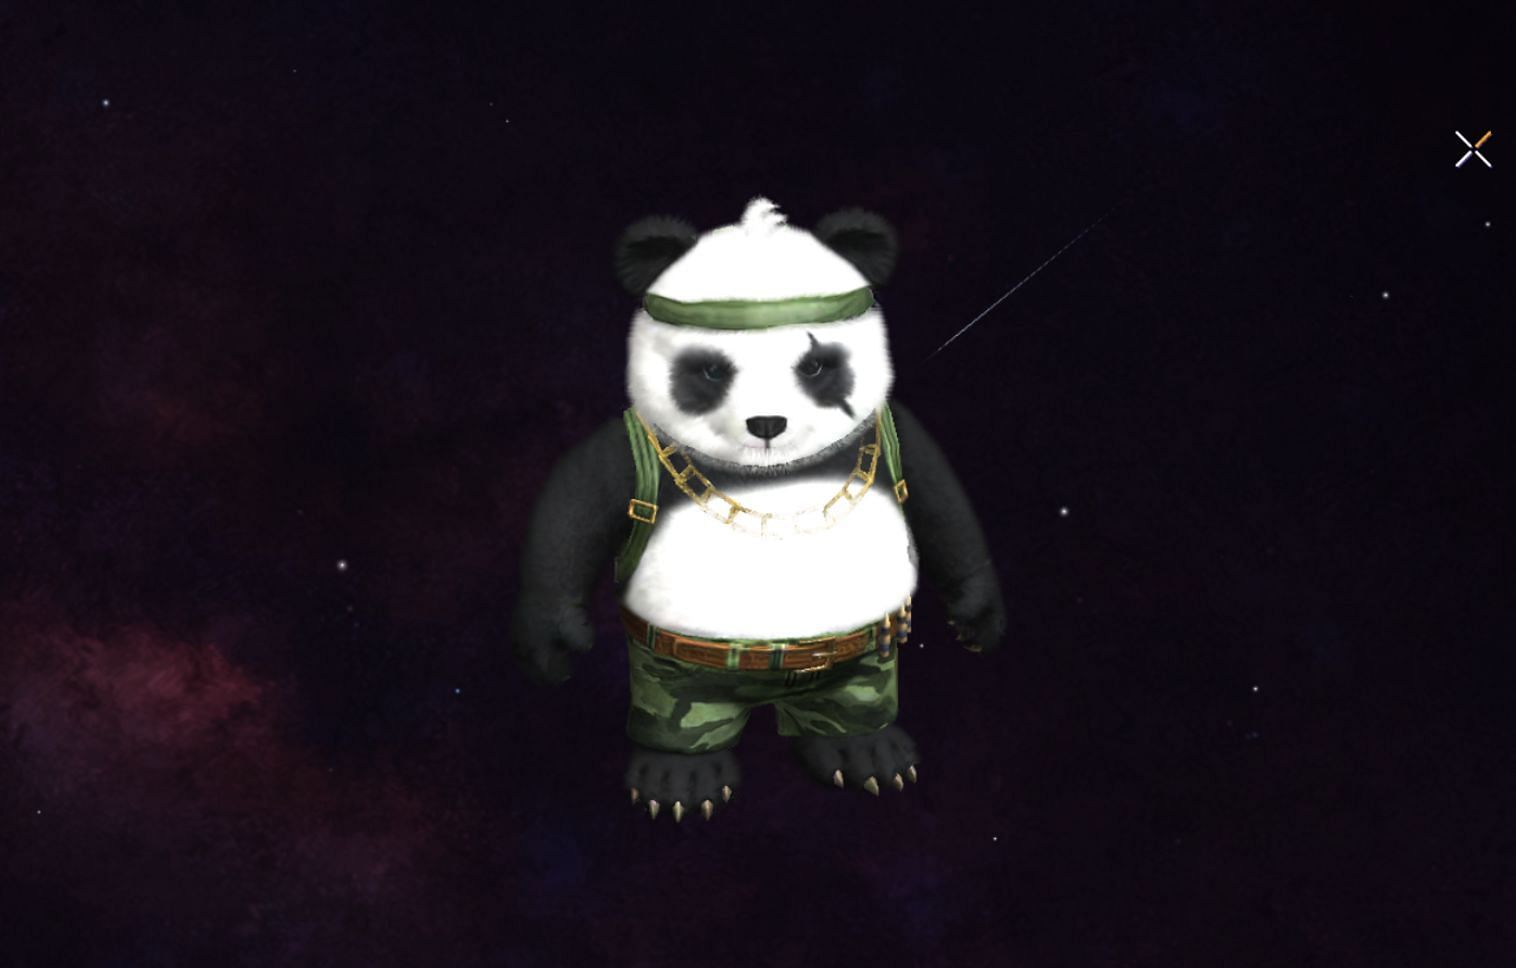 Detective Panda की स्किल शानदार है (Image via Garena)